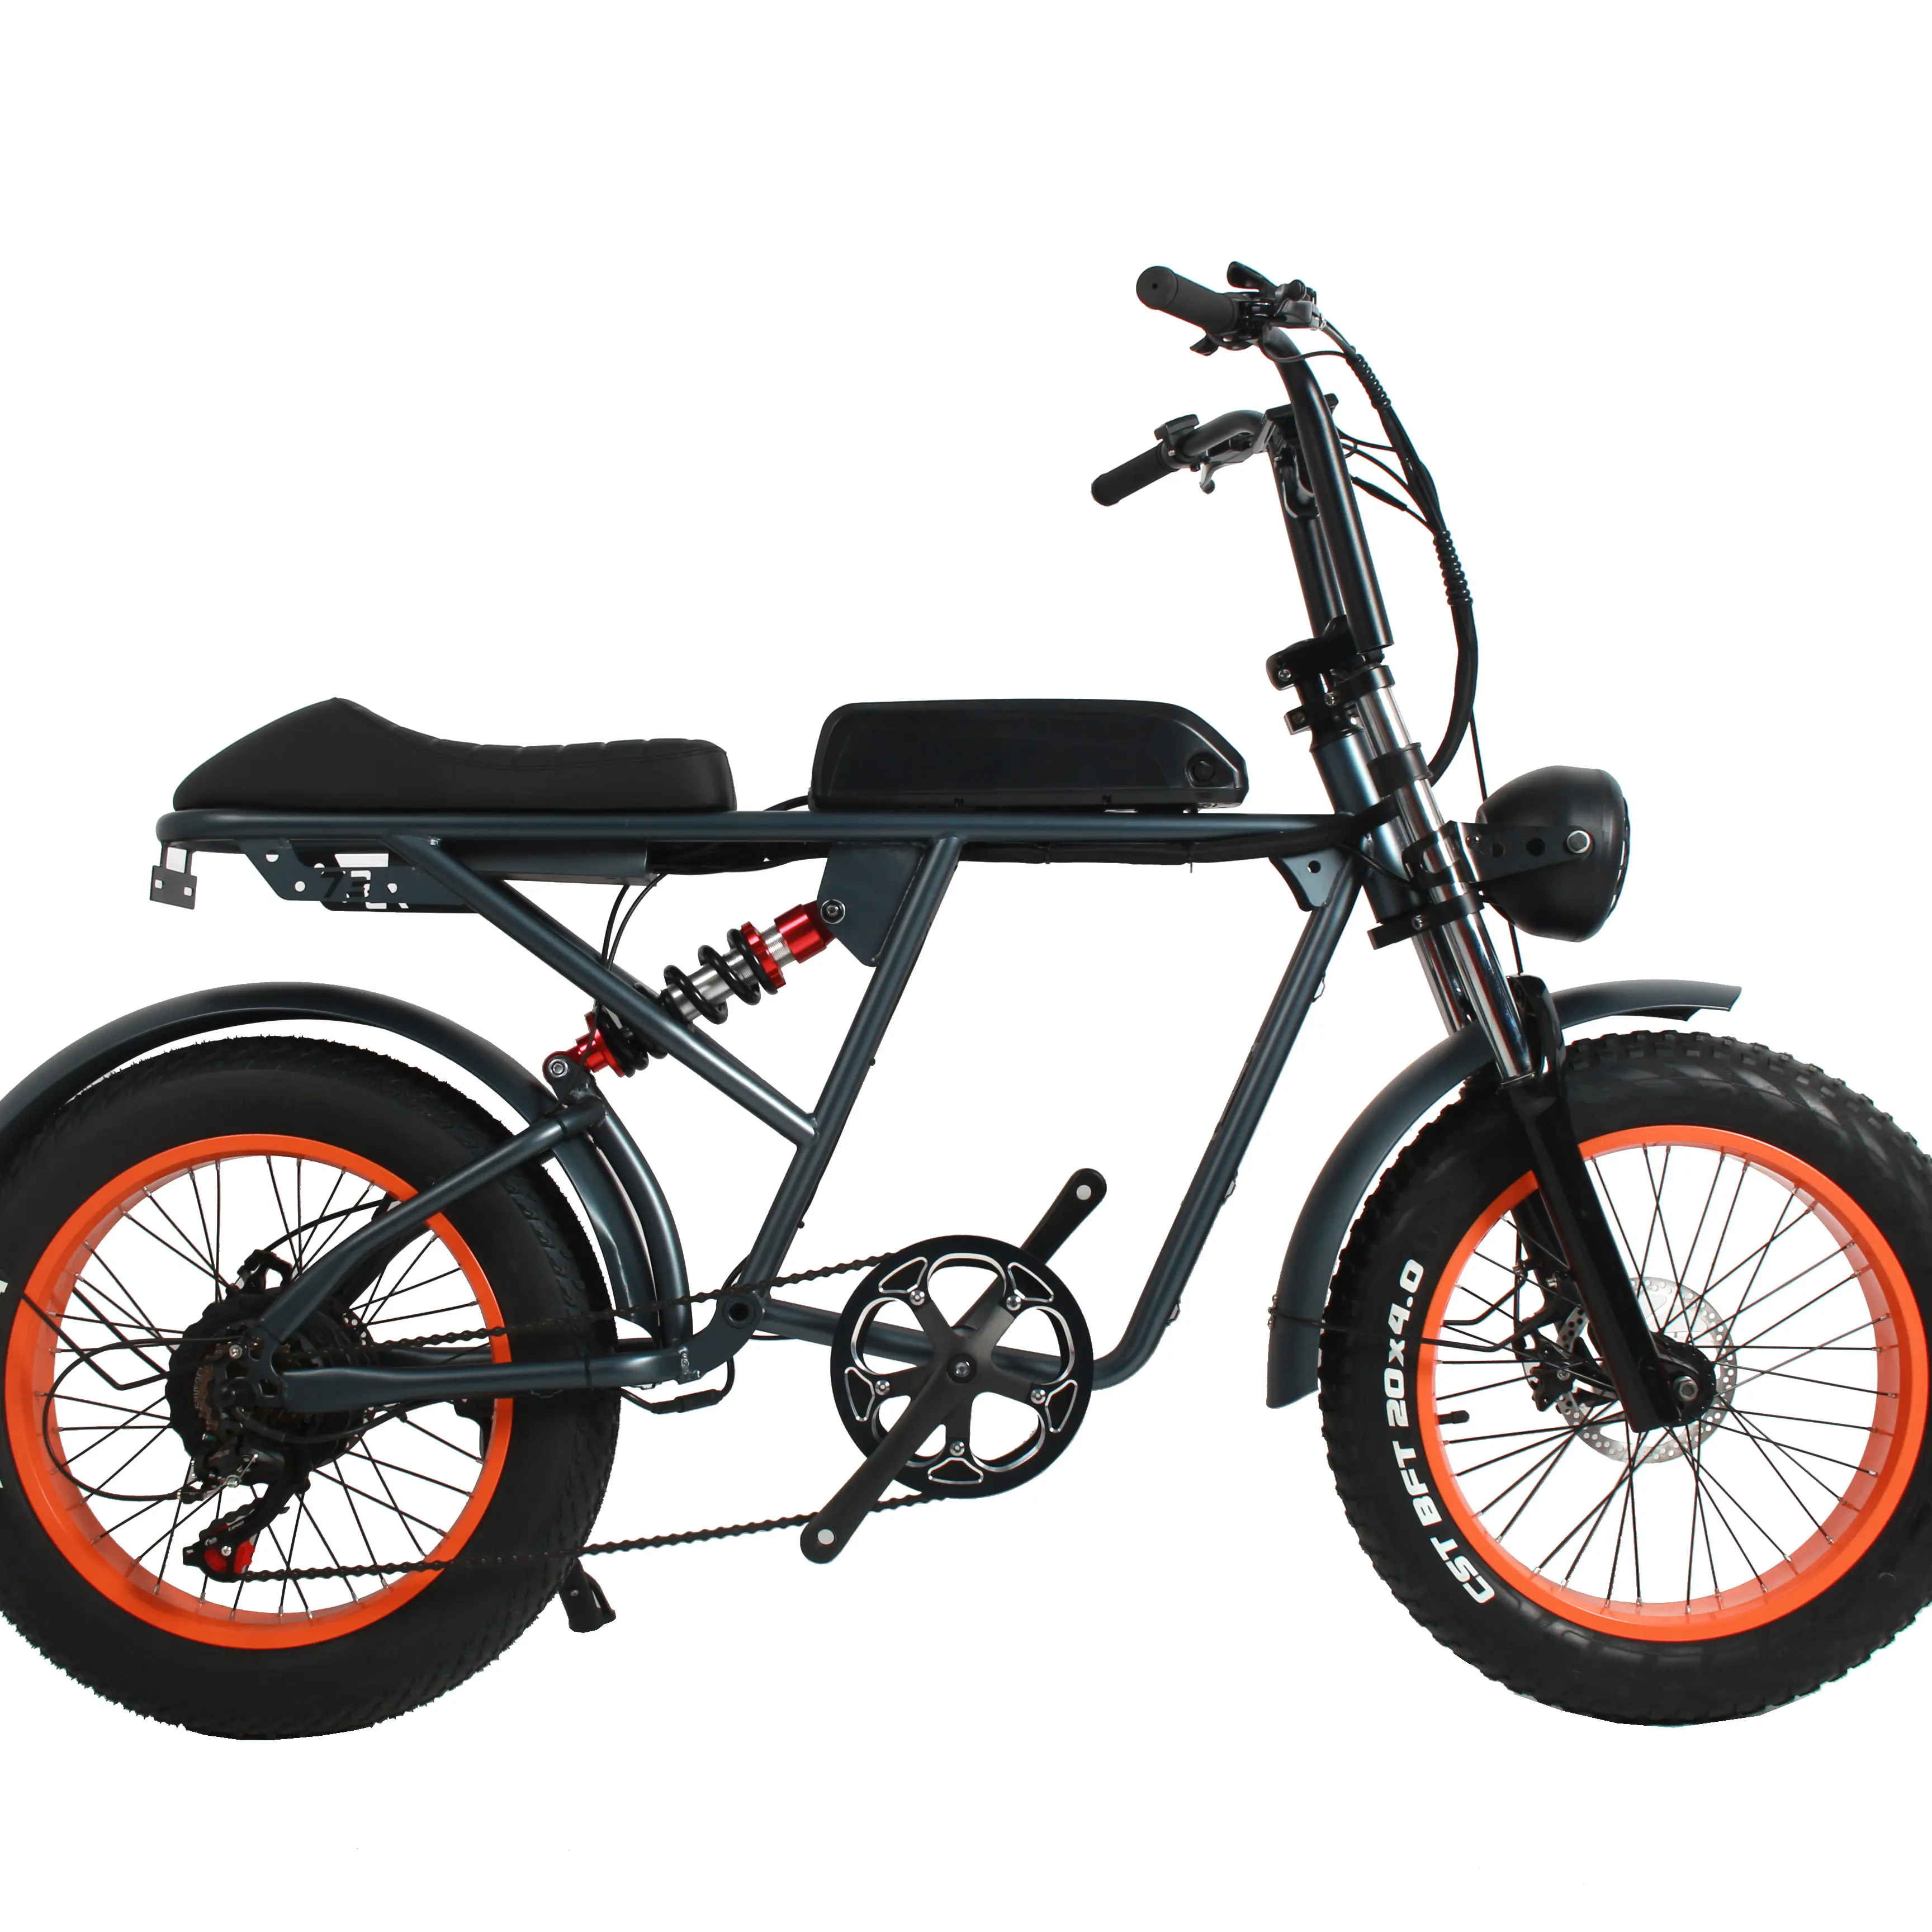 Sepeda Listrik Kecepatan Tinggi Sepeda Chopper Elektrik Sepeda Baterai Siklus 48V 500W Stealth Bomber Bike